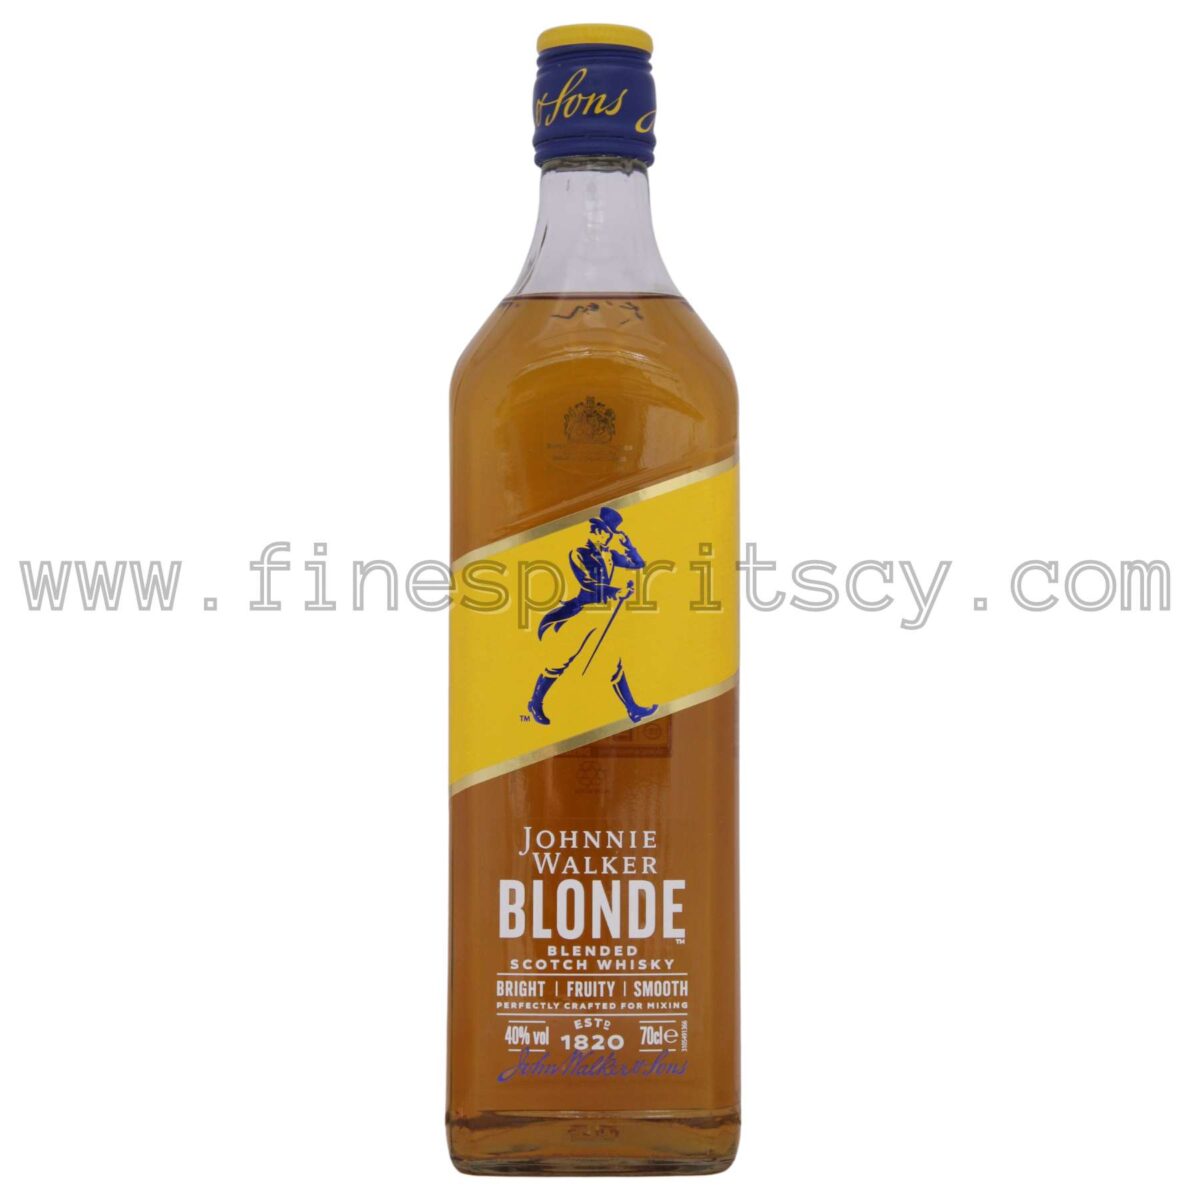 Johnnie Walker Blonde 700ml 70cl 0.7L Price Cyprus Fine Spirits CY Order Online Shop Buy